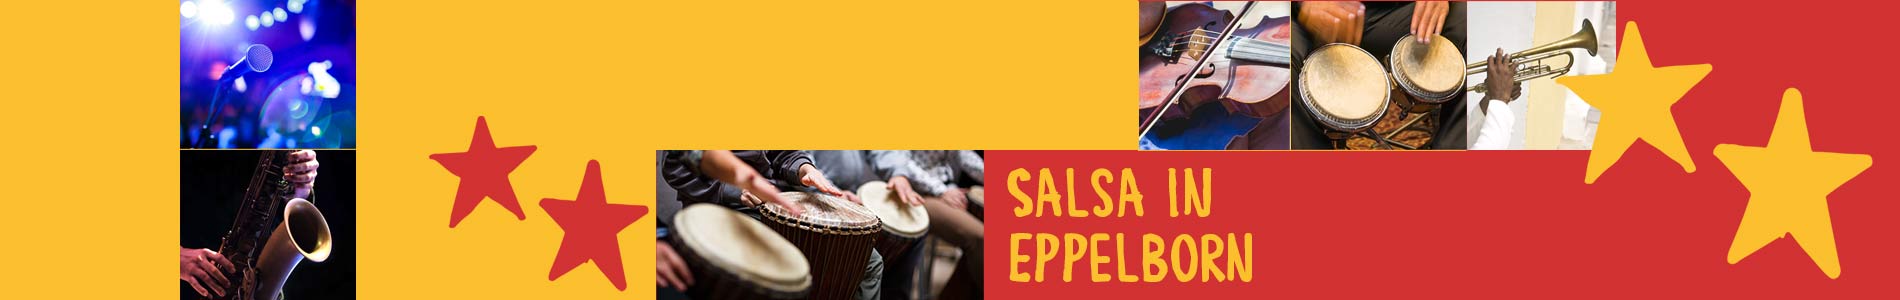 Salsa in Eppelborn – Salsa lernen und tanzen, Tanzkurse, Partys, Veranstaltungen